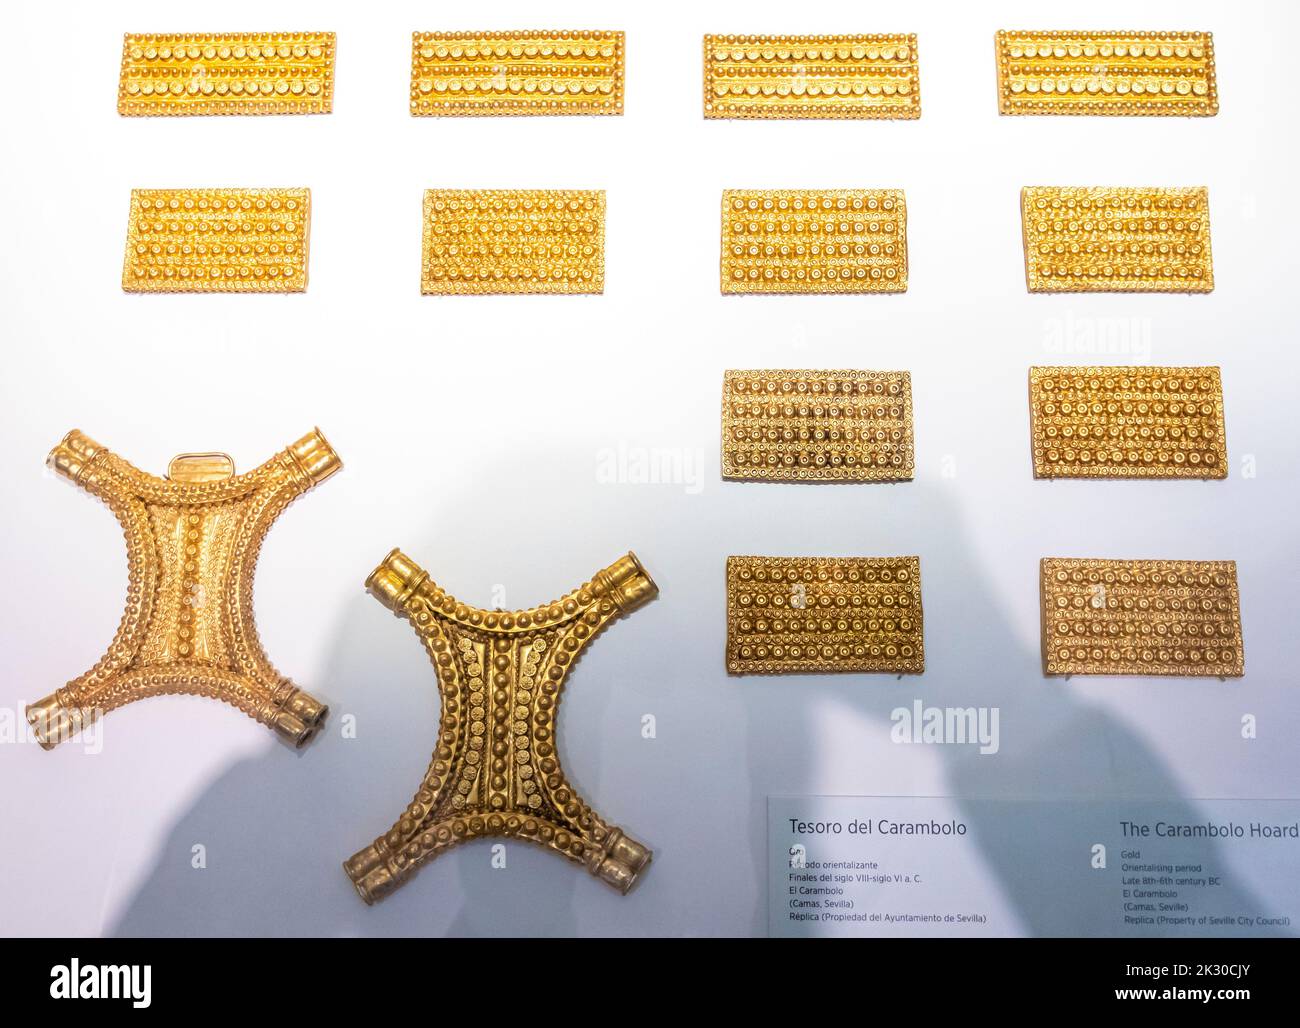 The Carambolo hoard - gold - Orientalizing period - Late 8th - 6th century B.C. - El Carambolo - Camas, Seville, Replica Stock Photo